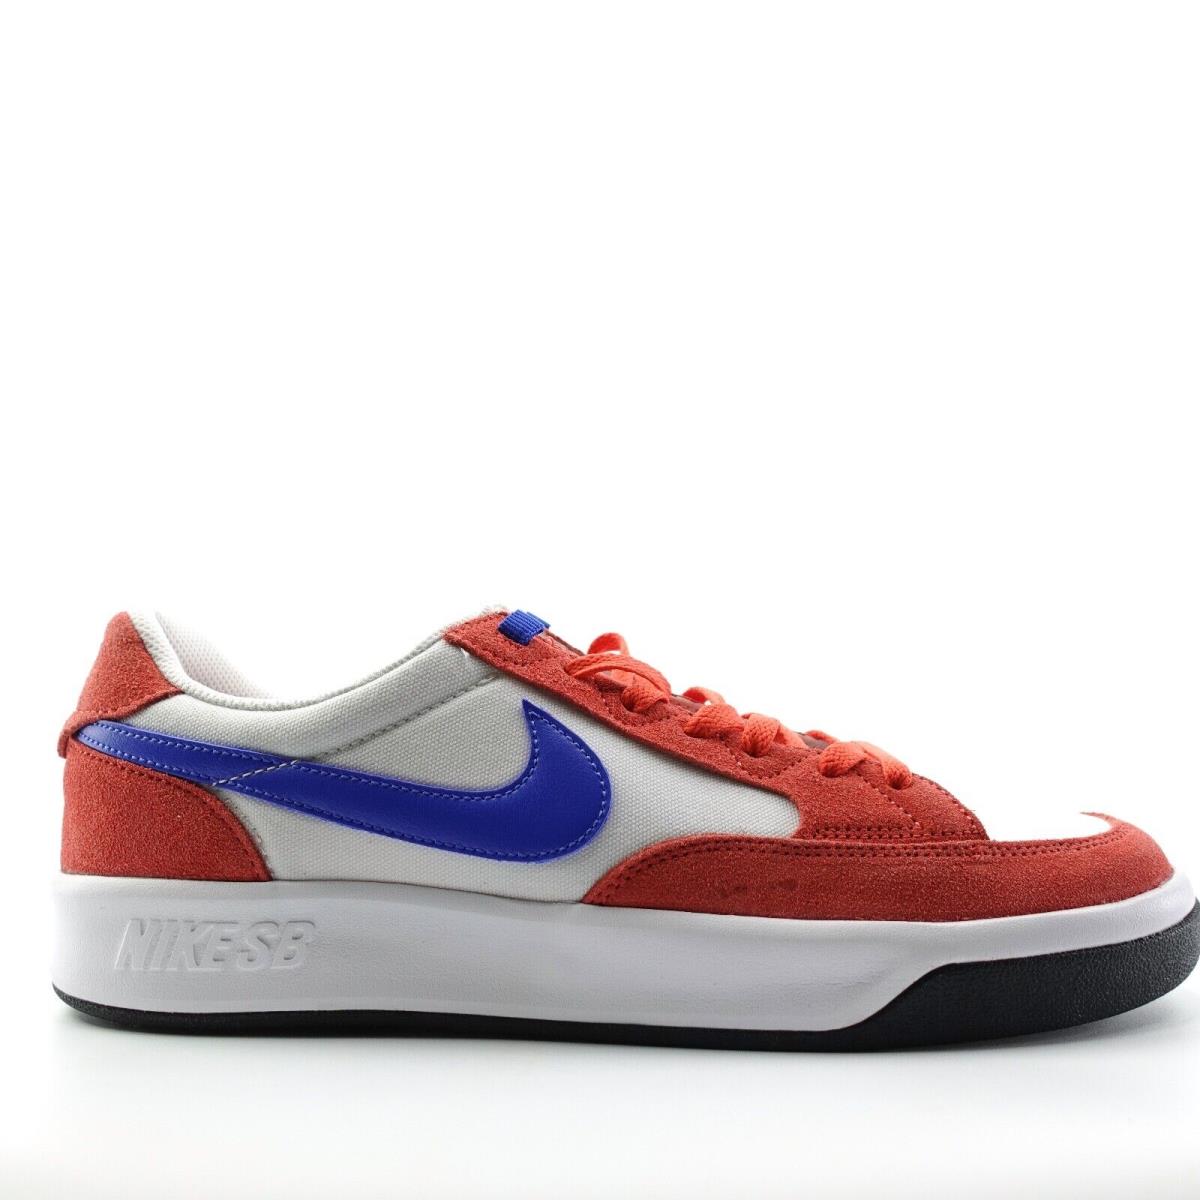 Nike SB Adversary Premium Mens Size 8 Shoes Lobster White Royal CW7456-600